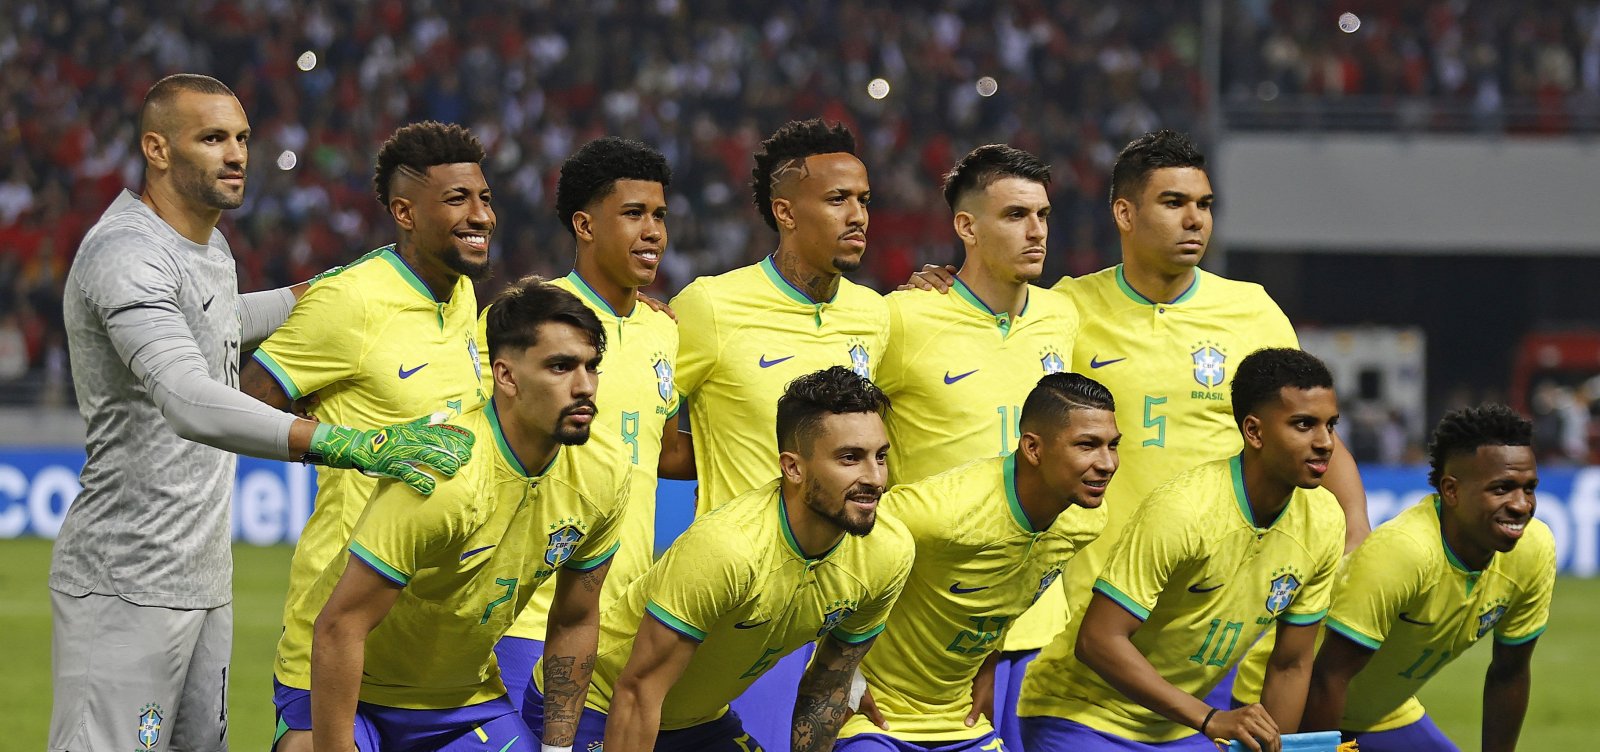 Globo e CBF fecham acordo para transmissão exclusiva de jogos da seleção masculina até 2026